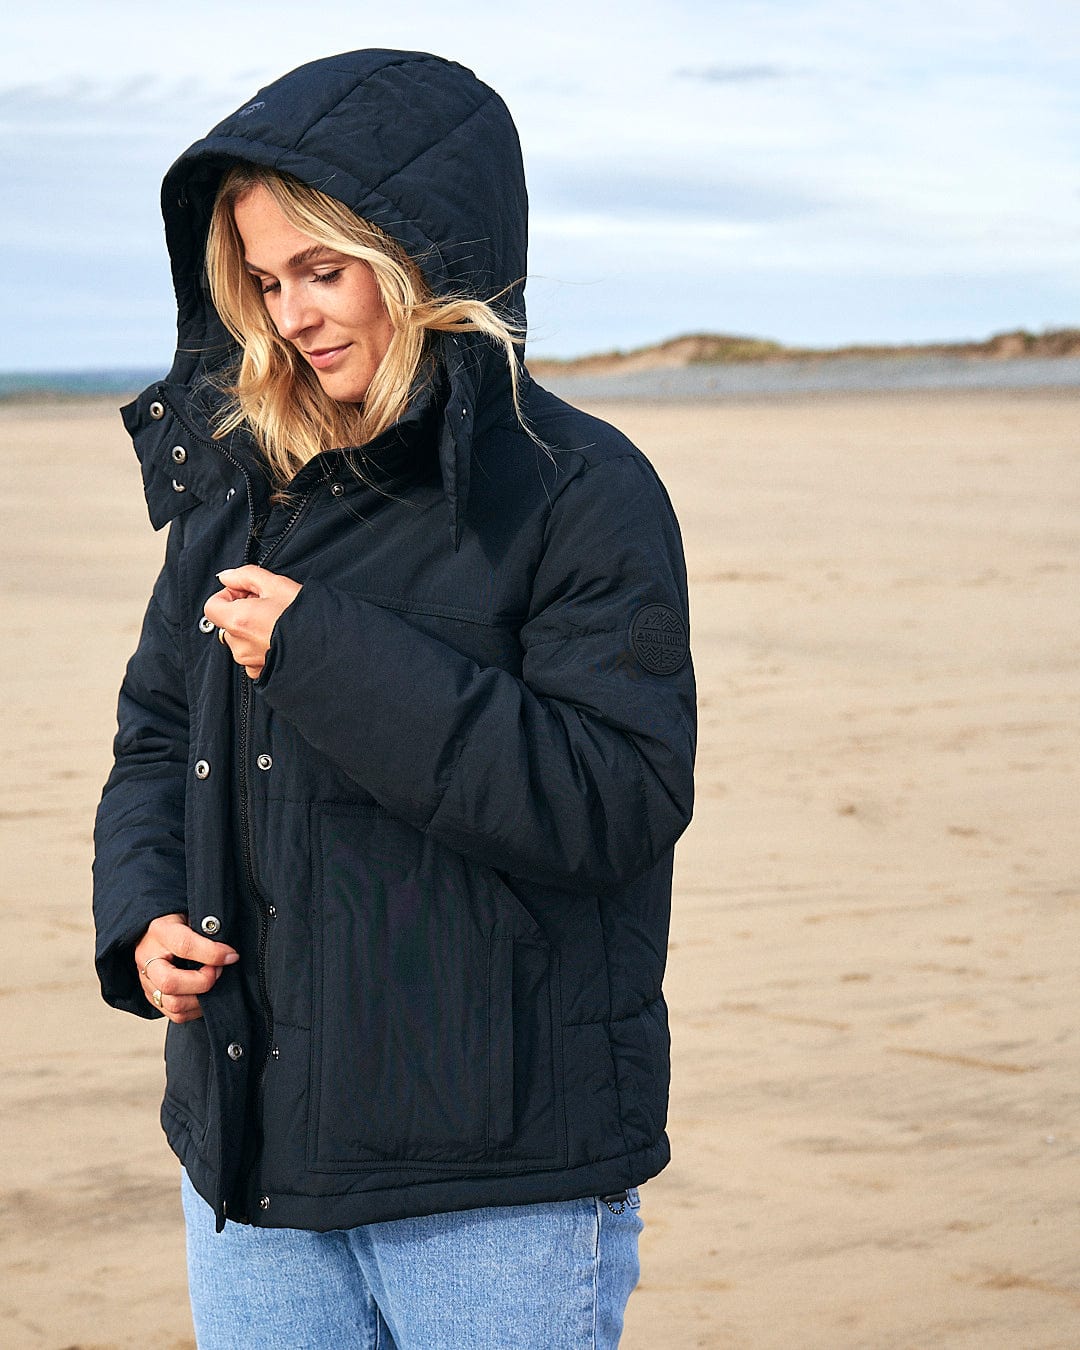 A woman wearing a Saltrock Aspen - Womens Short Puffer Jacket - Black on the beach.